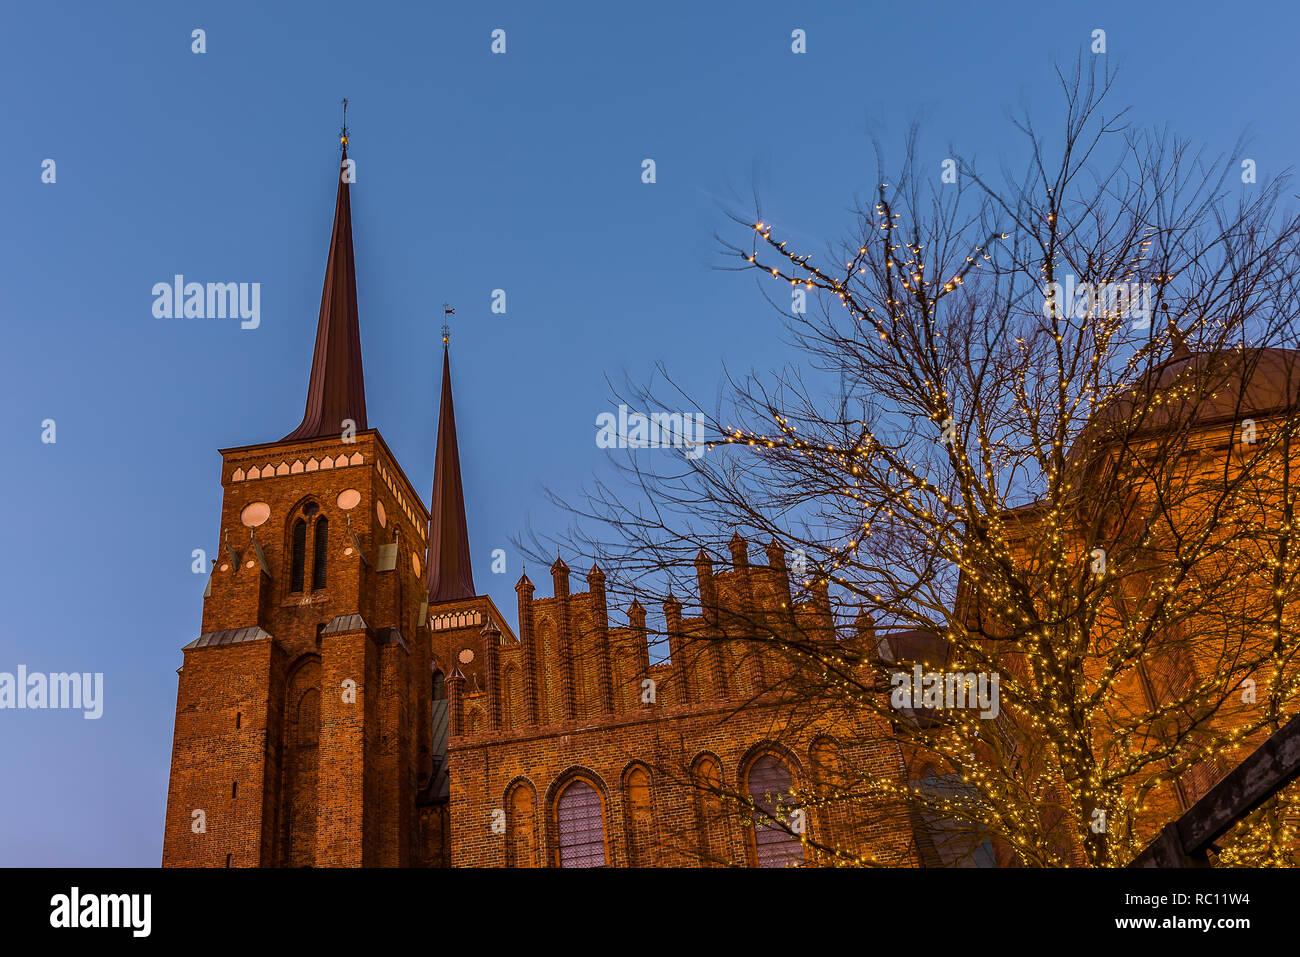 Catedral Roskilde en el suave atardecer contra el cielo azul y un árbol con bombillas, Roskilde, Dinamarca, Jaunuary 11, 2019 Foto de stock